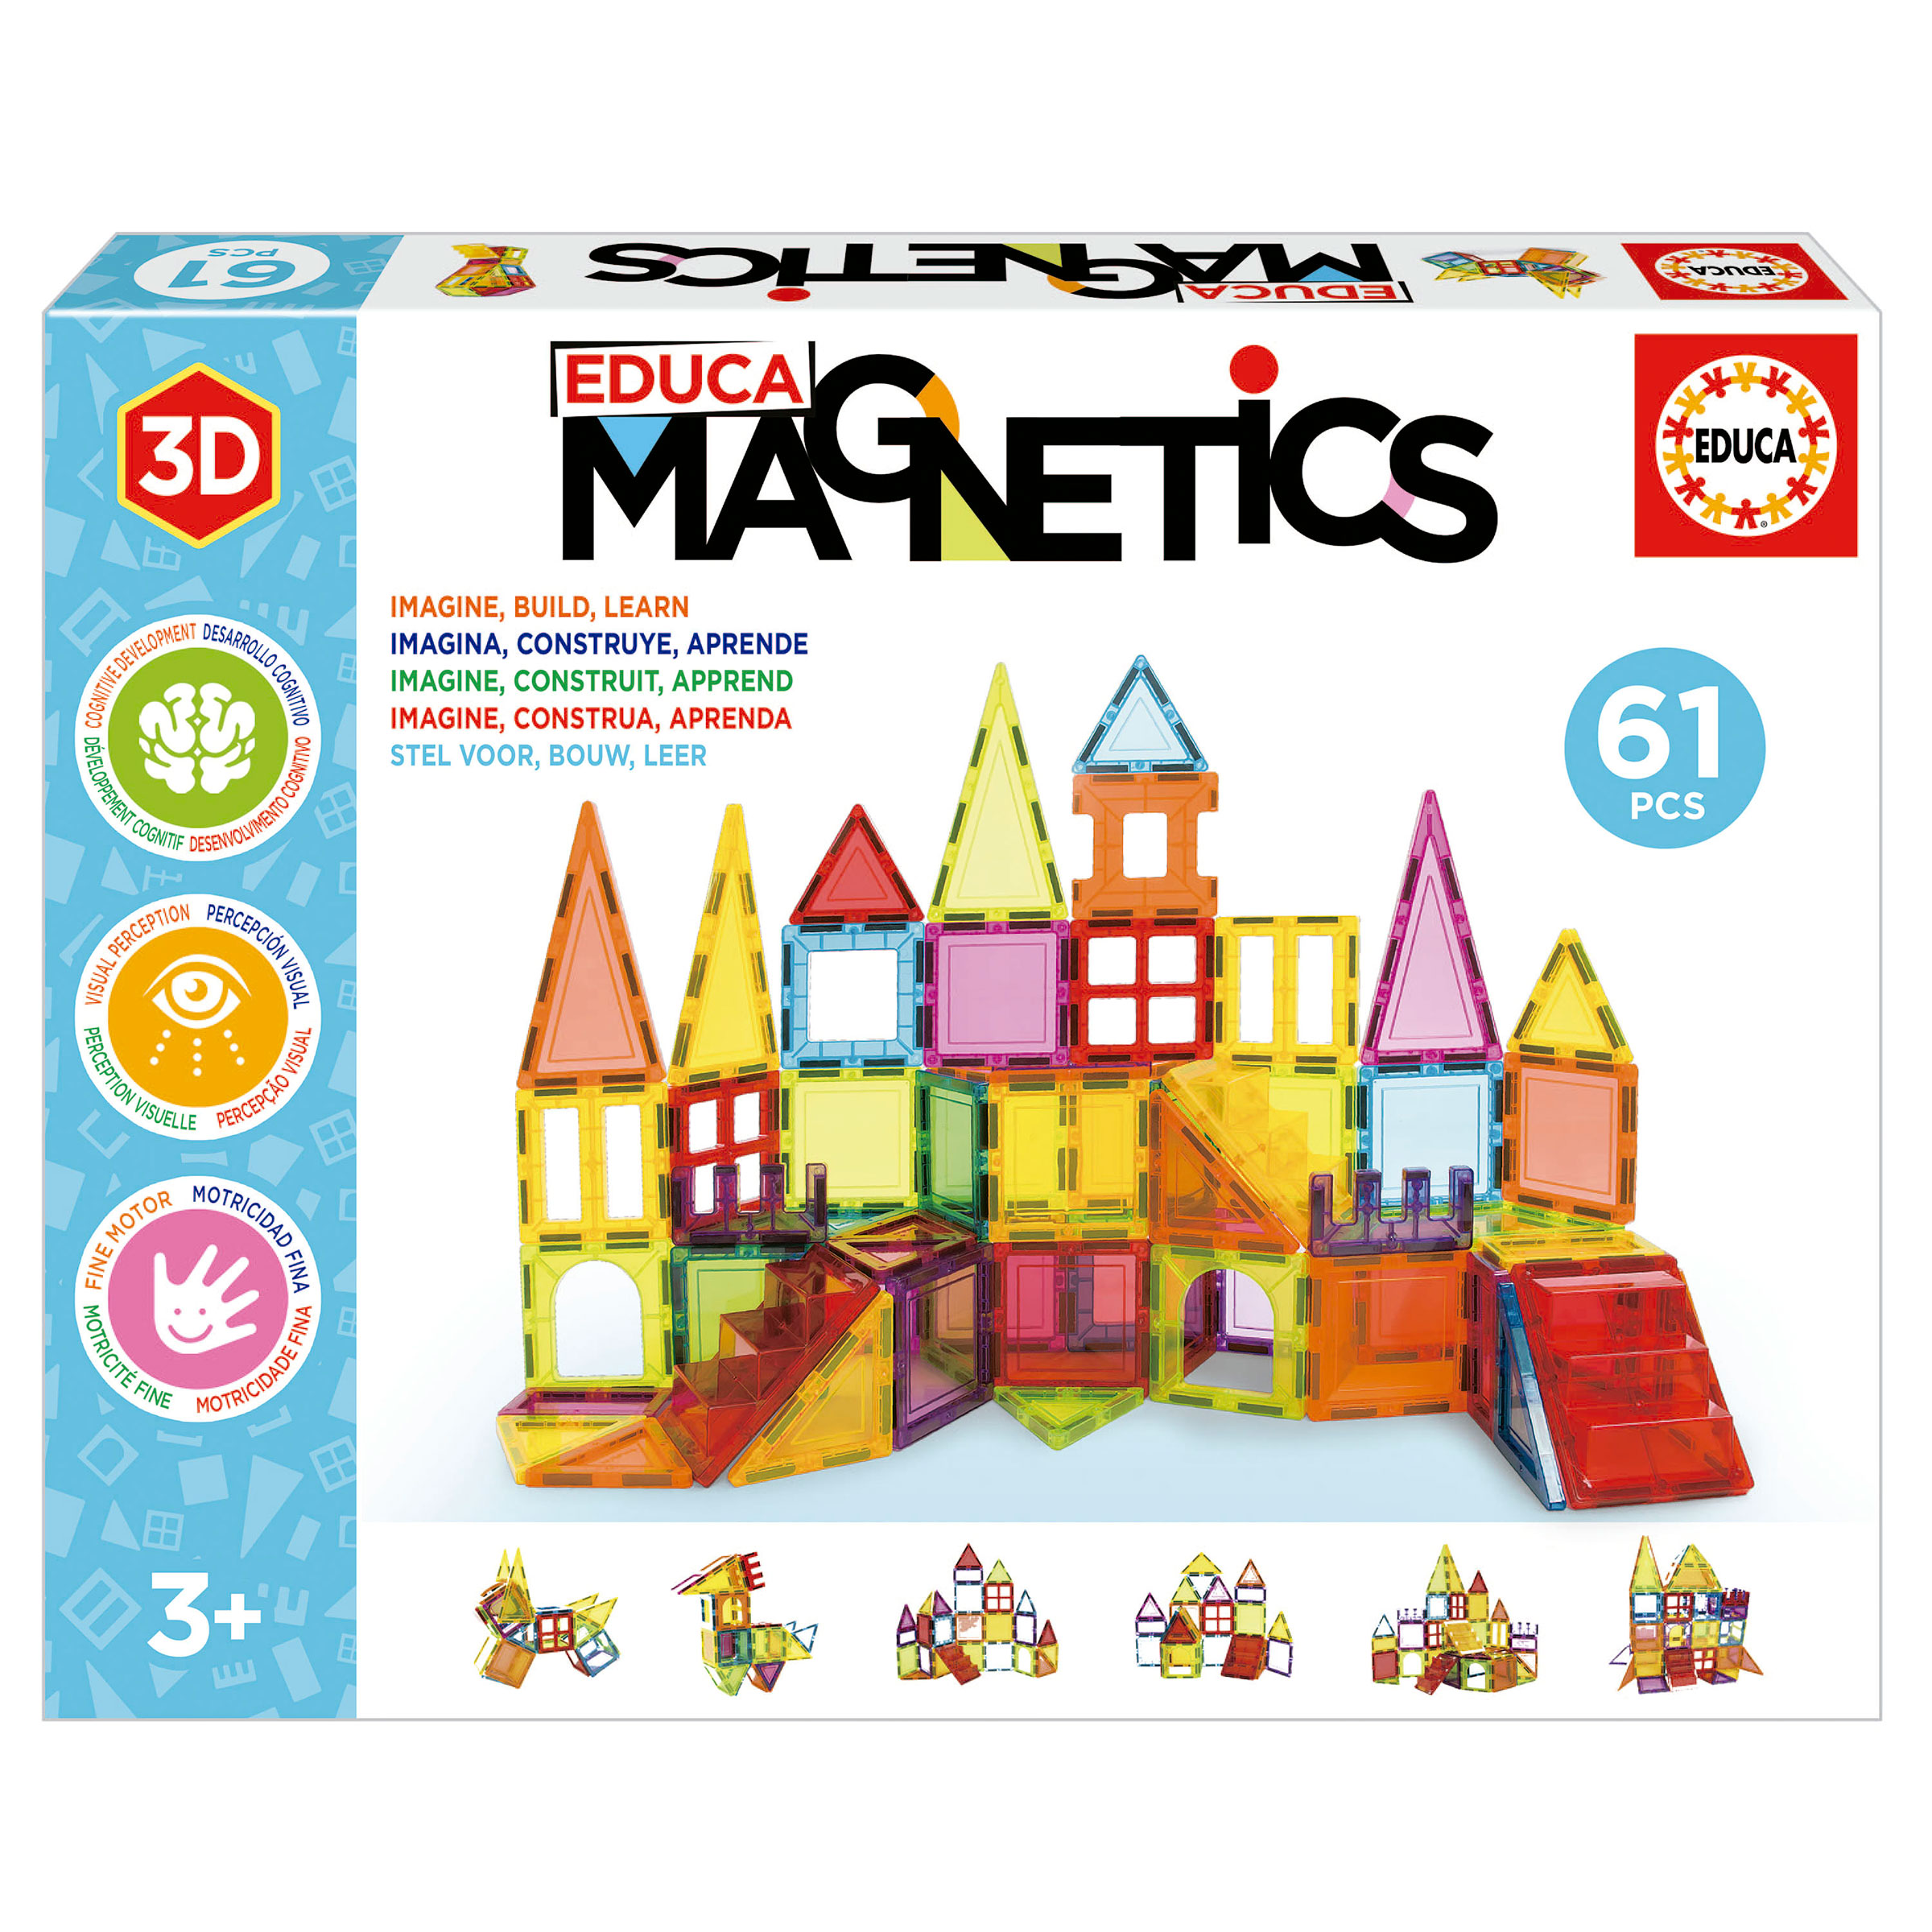 Educa Magnetics 61 pieces